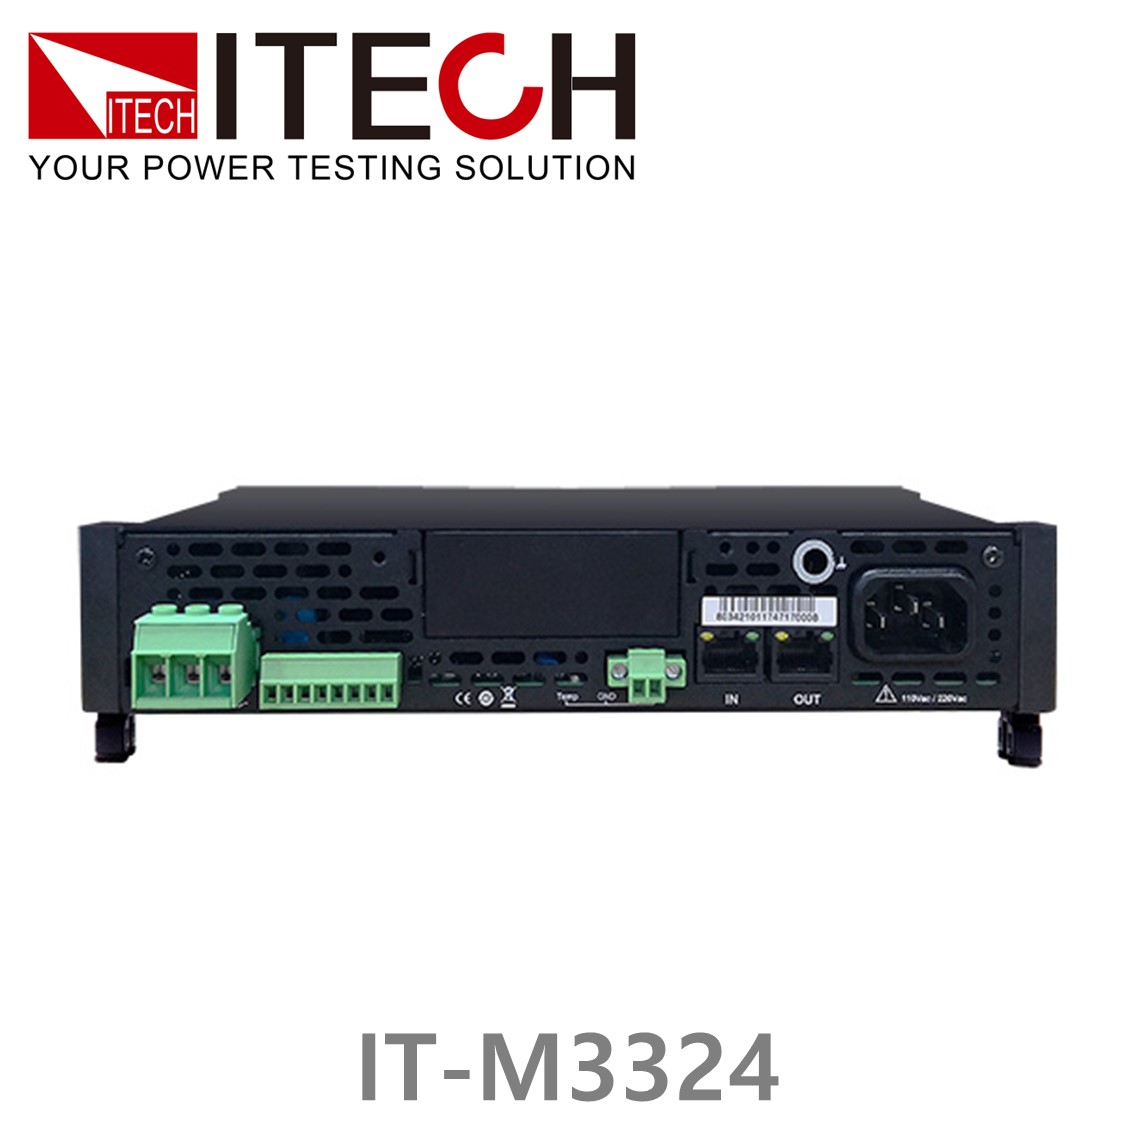 [ ITECH ] IT-M3324 DC전자부하기 (300V/6A/400W), DC전자로드